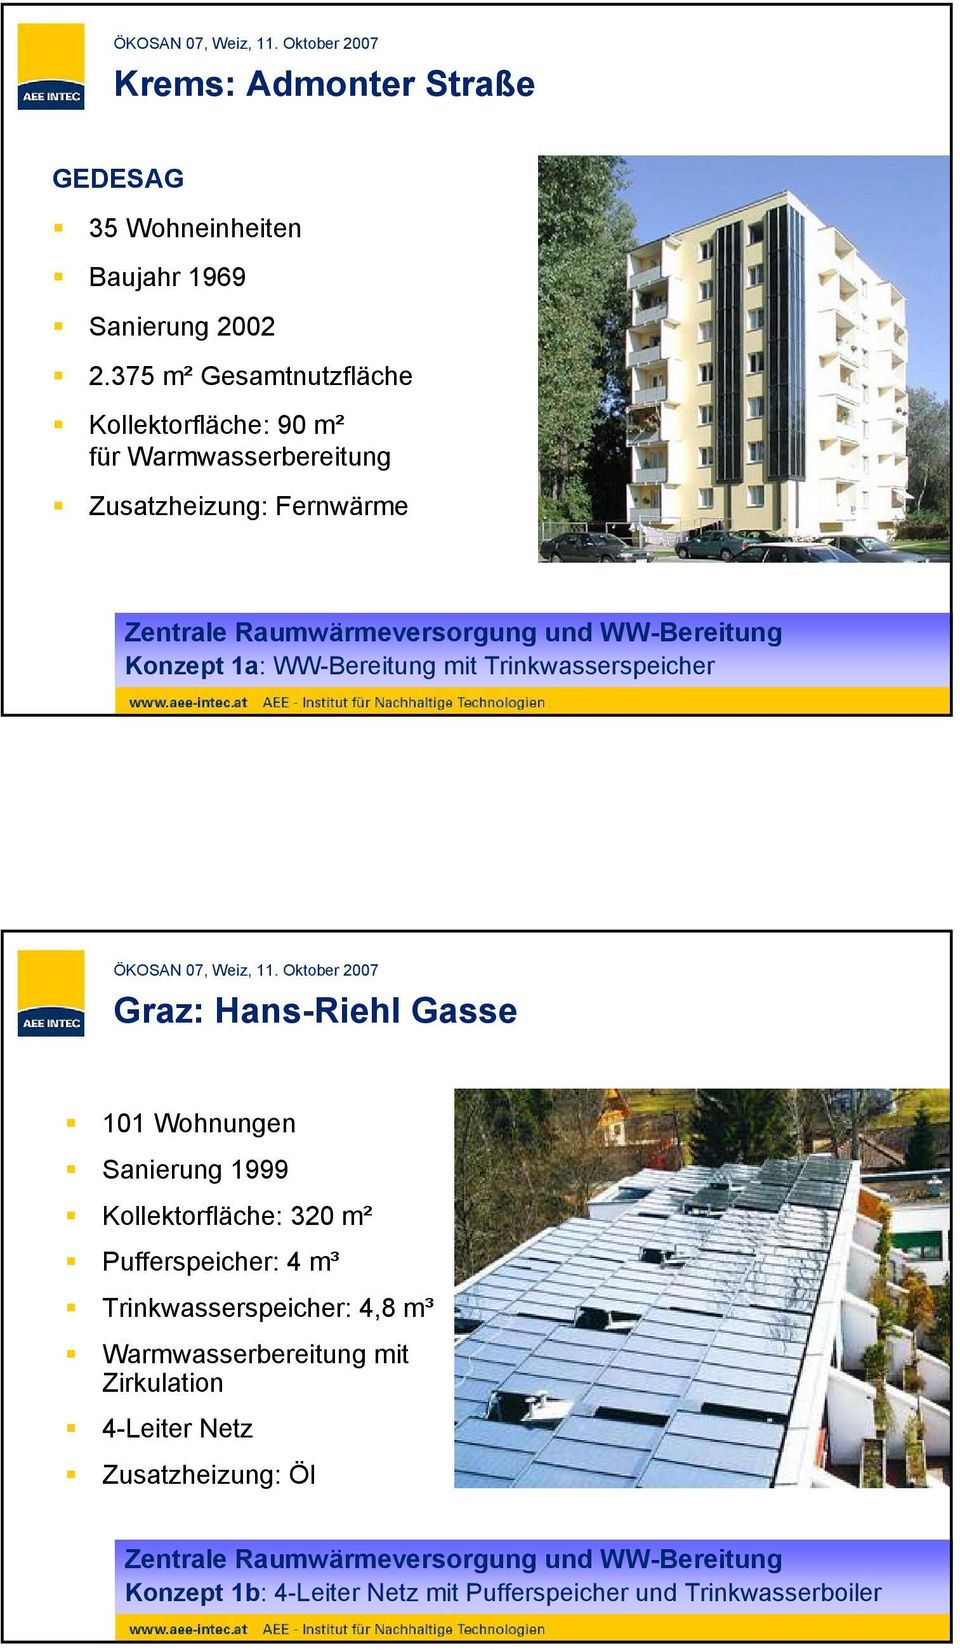 Konzept 1a: WW-Bereitung mit Trinkwasserspeicher Graz: Hans-Riehl Gasse 101 Wohnungen Sanierung 1999 Kollektorfläche: 320 m² Pufferspeicher: 4 m³